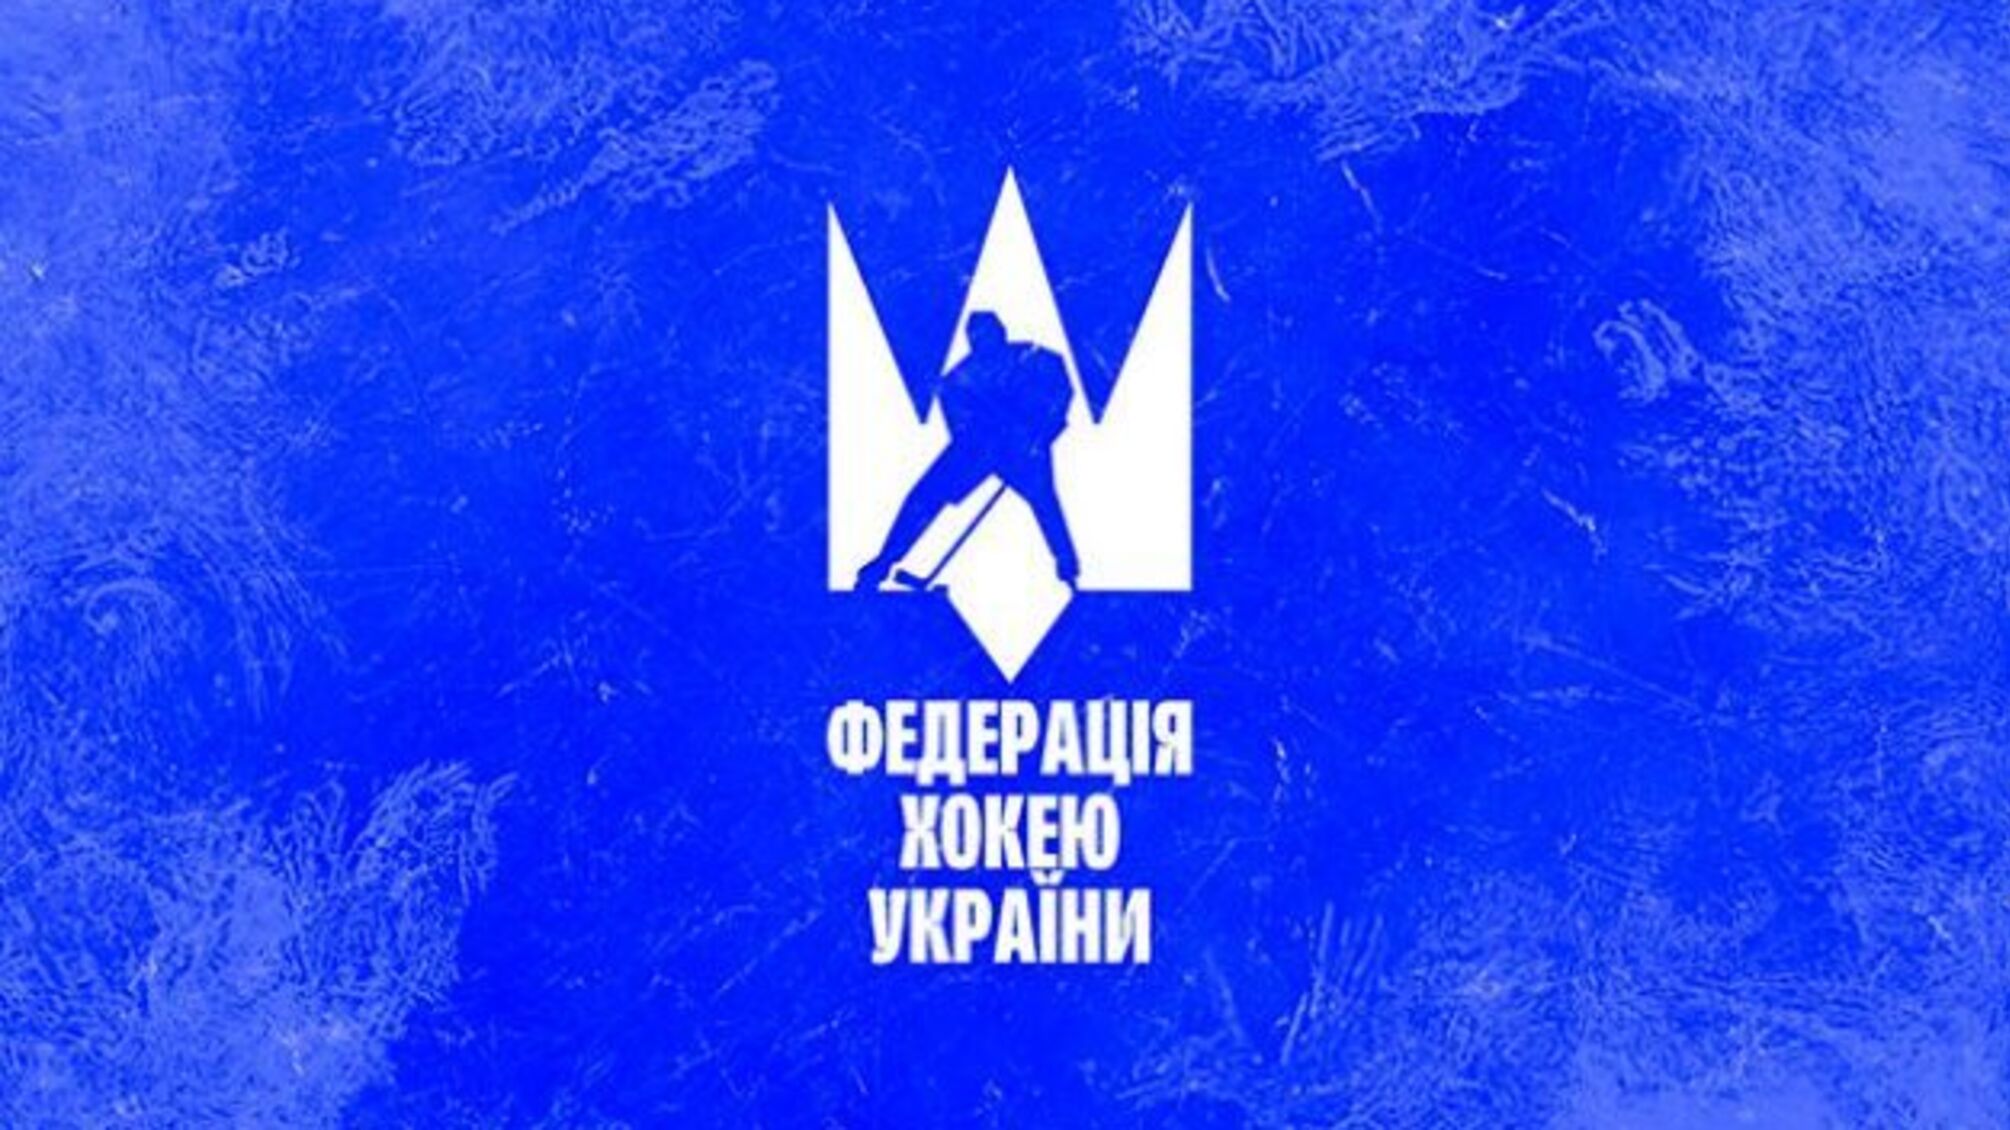 Федерація хокею України винесла вердикт щодо клубів «Донбас» та «Краматорськ»